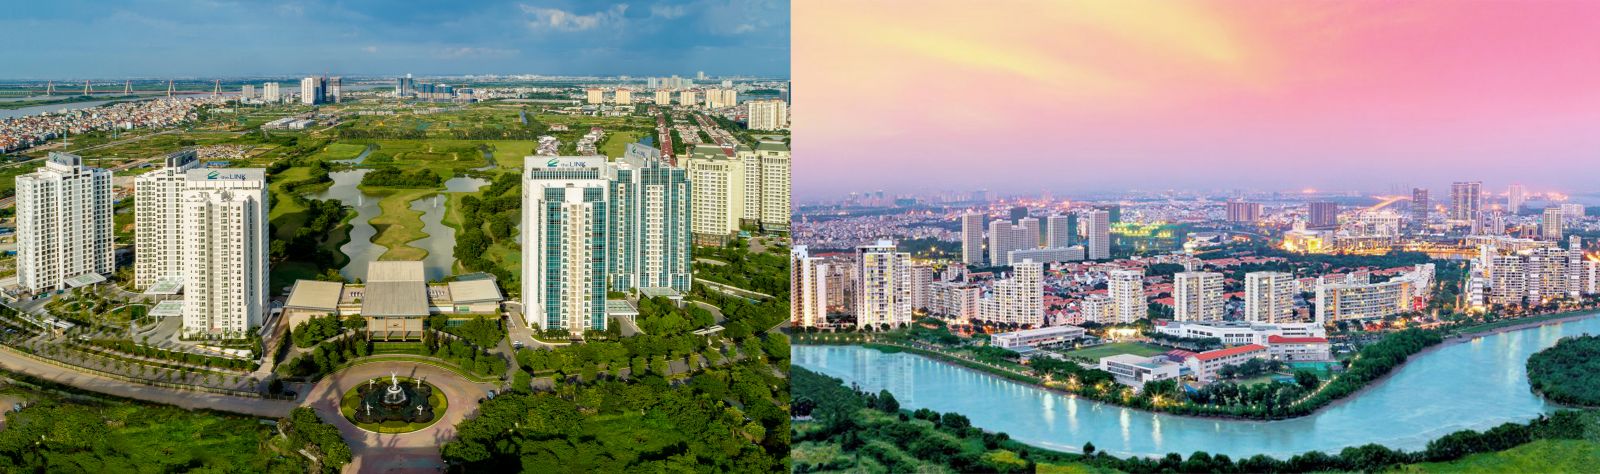 Ciputra (Hà Nội) và Phú Mỹ Hưng (TP.HCM) - Hai điển hình trong tiên phong phát triển khu đô thị xanh đẳng cấp và tiện ích đồng bộ.